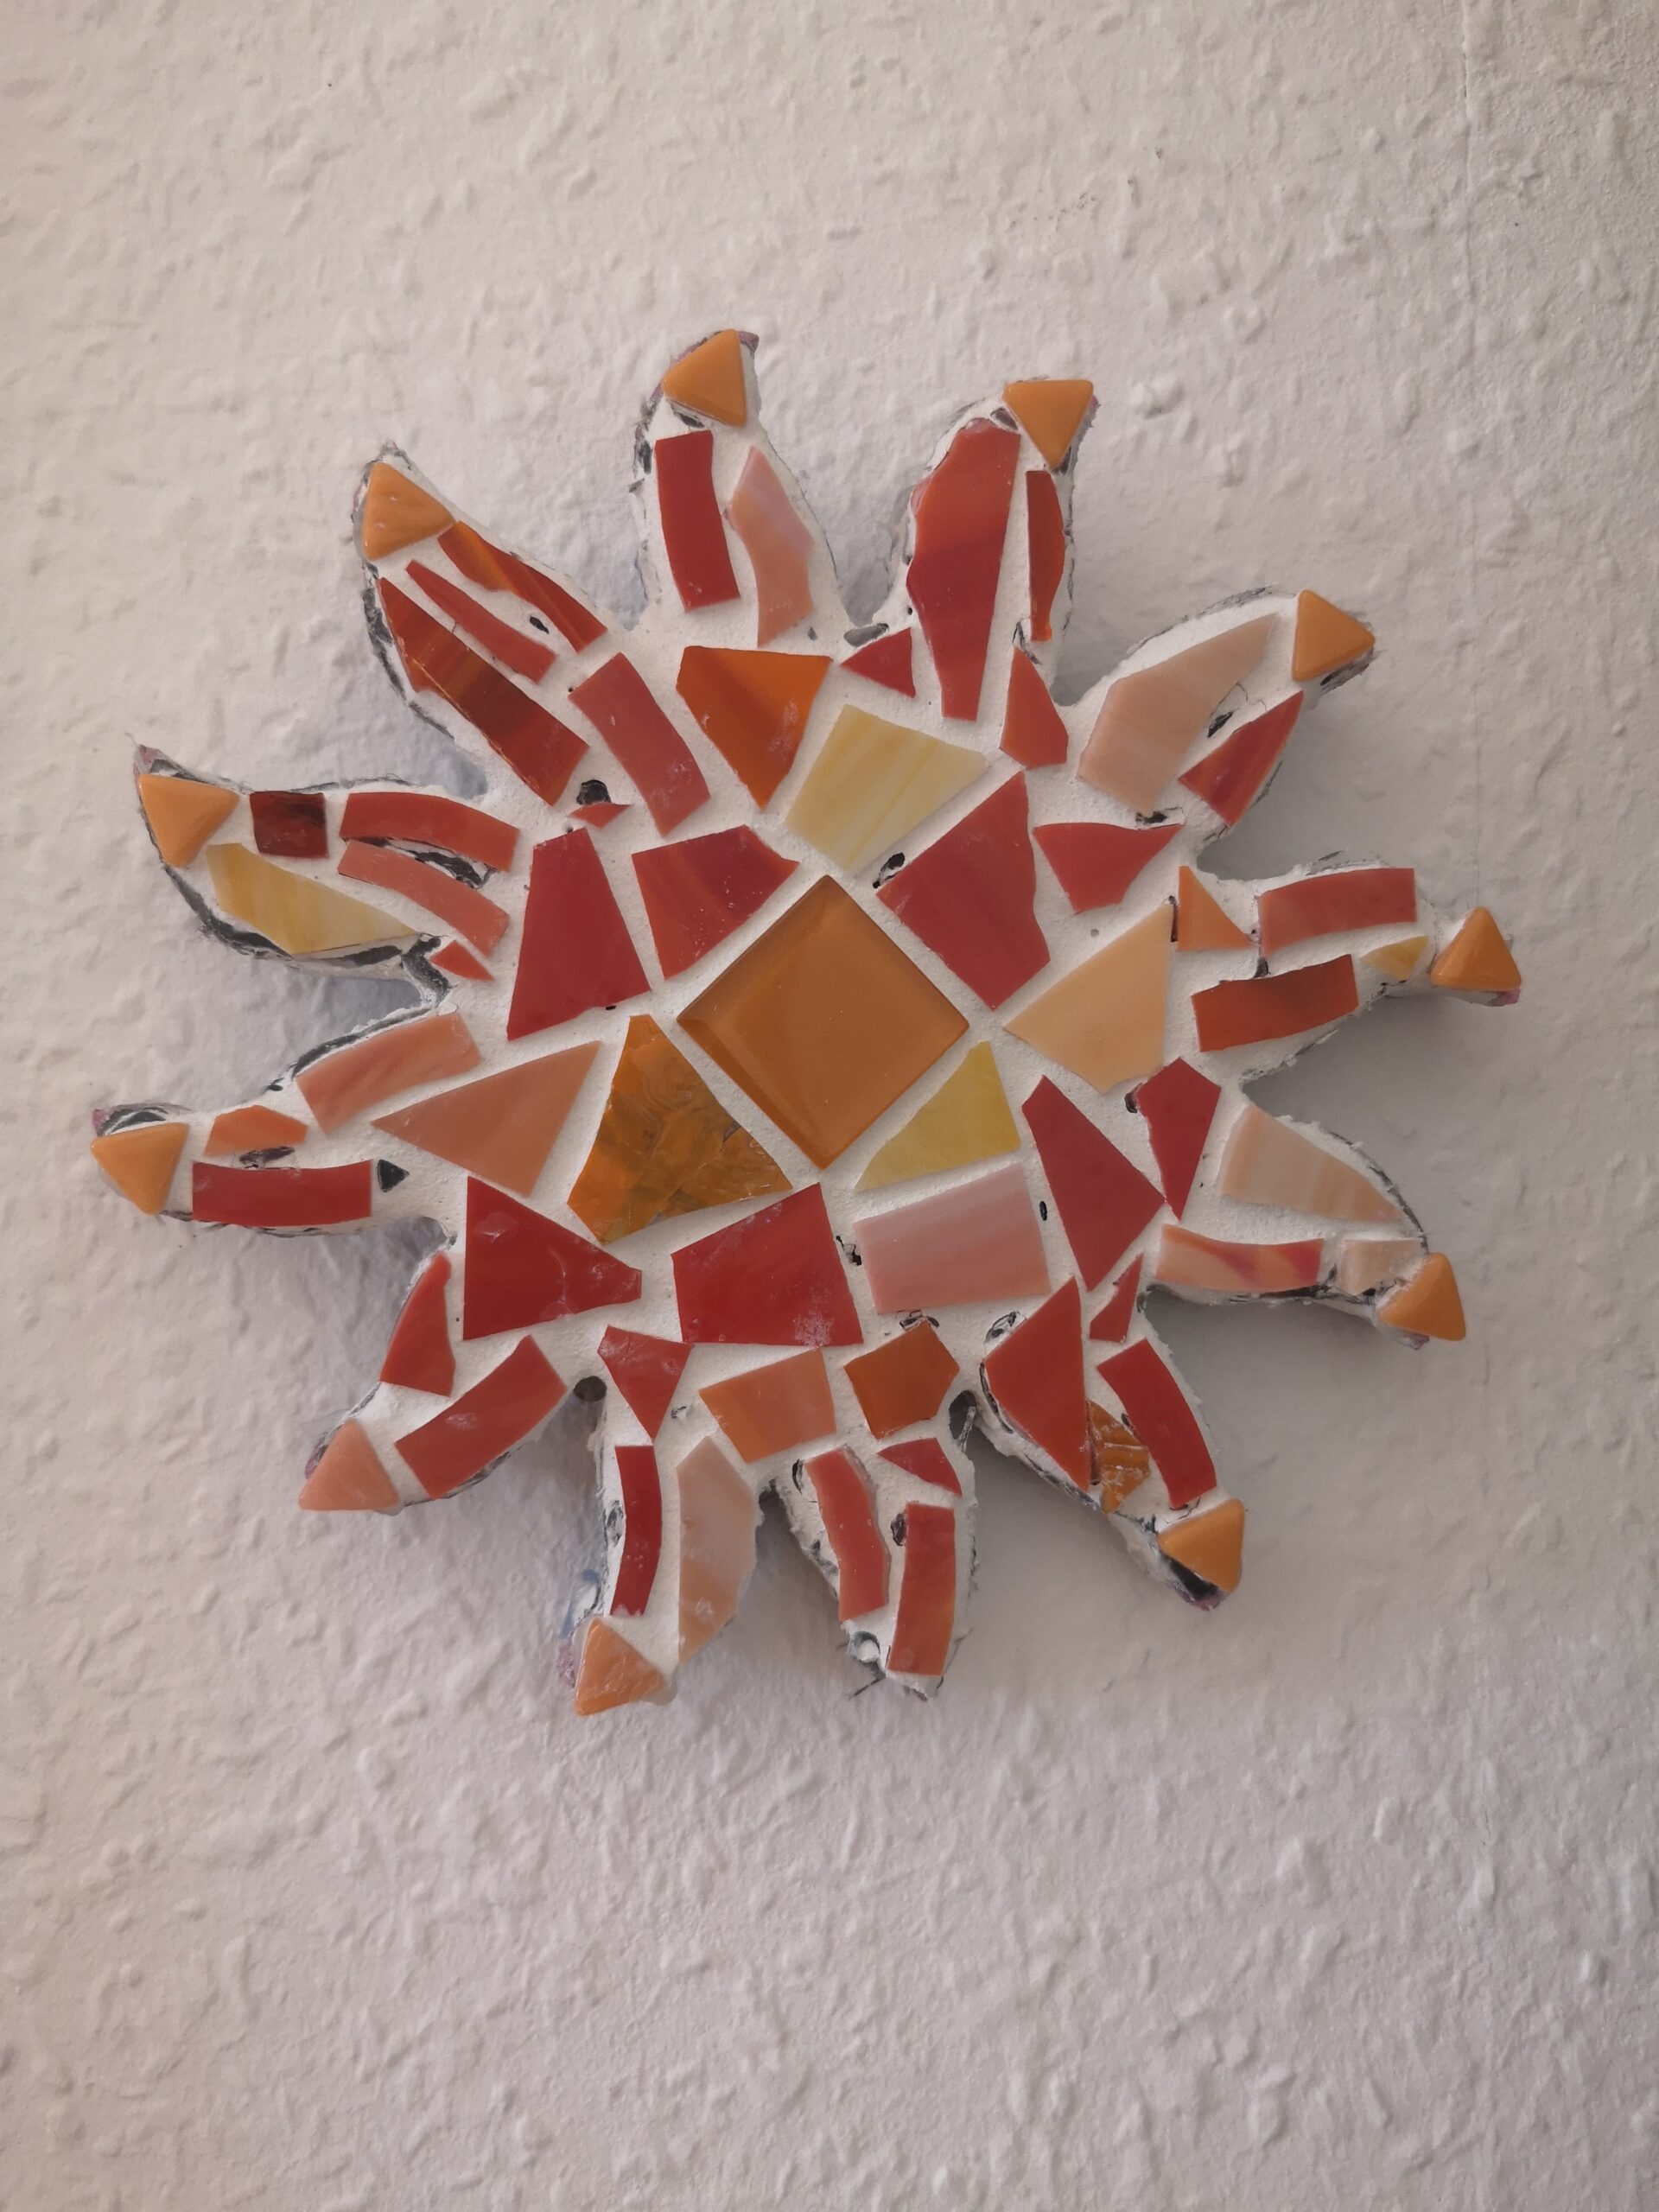 Bild einer Sonne, gestaltet mit Mosaik - Rückseite in orange